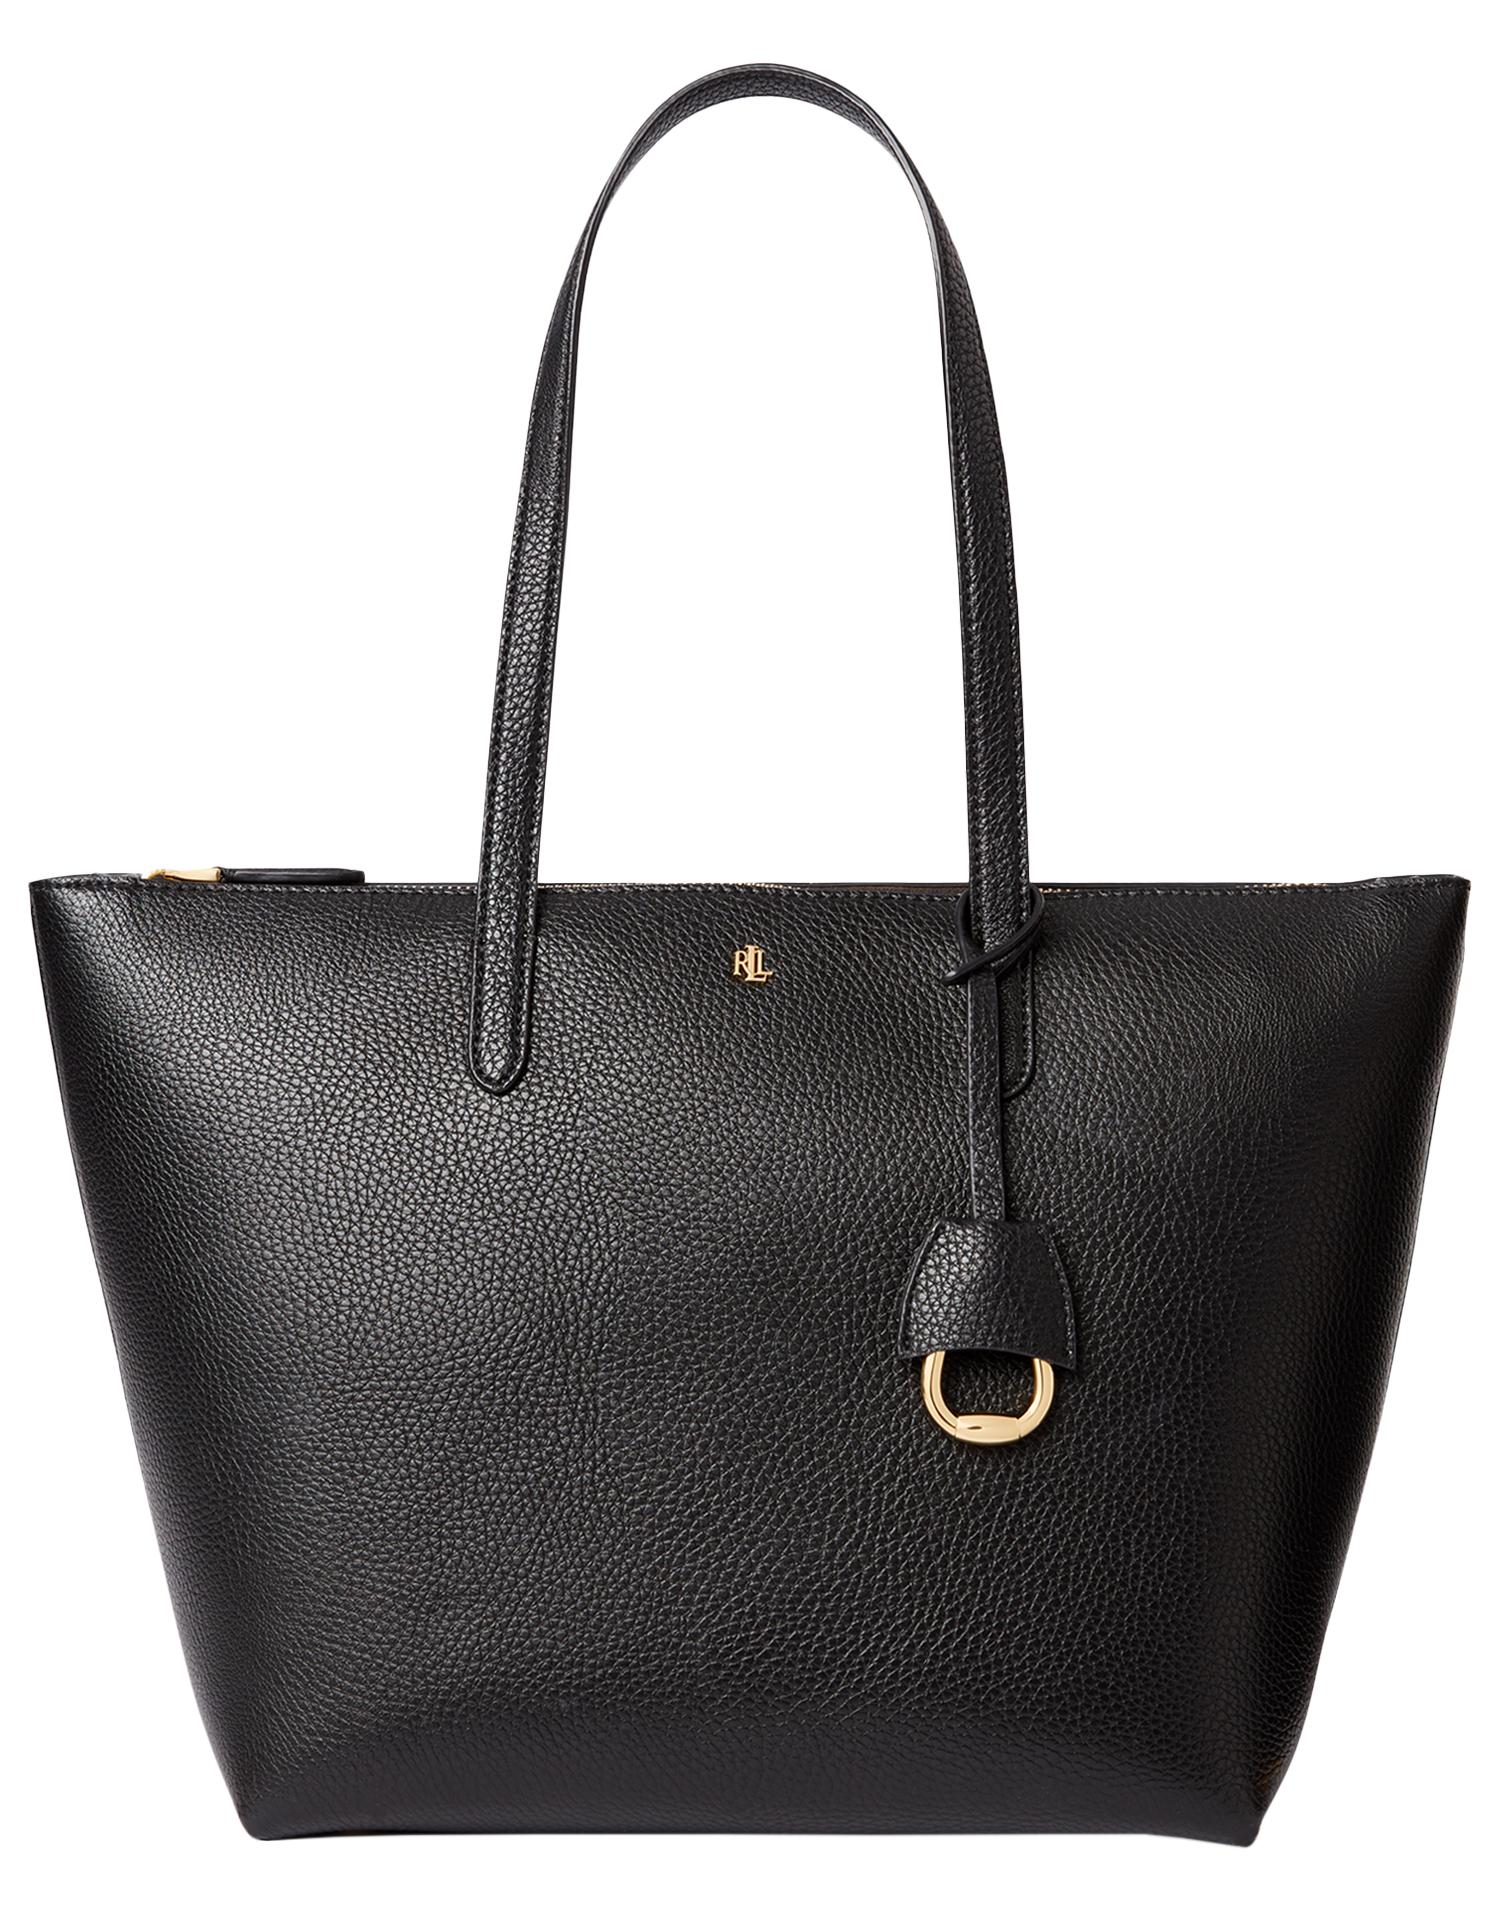 Lauren by Ralph Lauren Keaton 26 Tote Small Shopper Bag in Black | Lyst